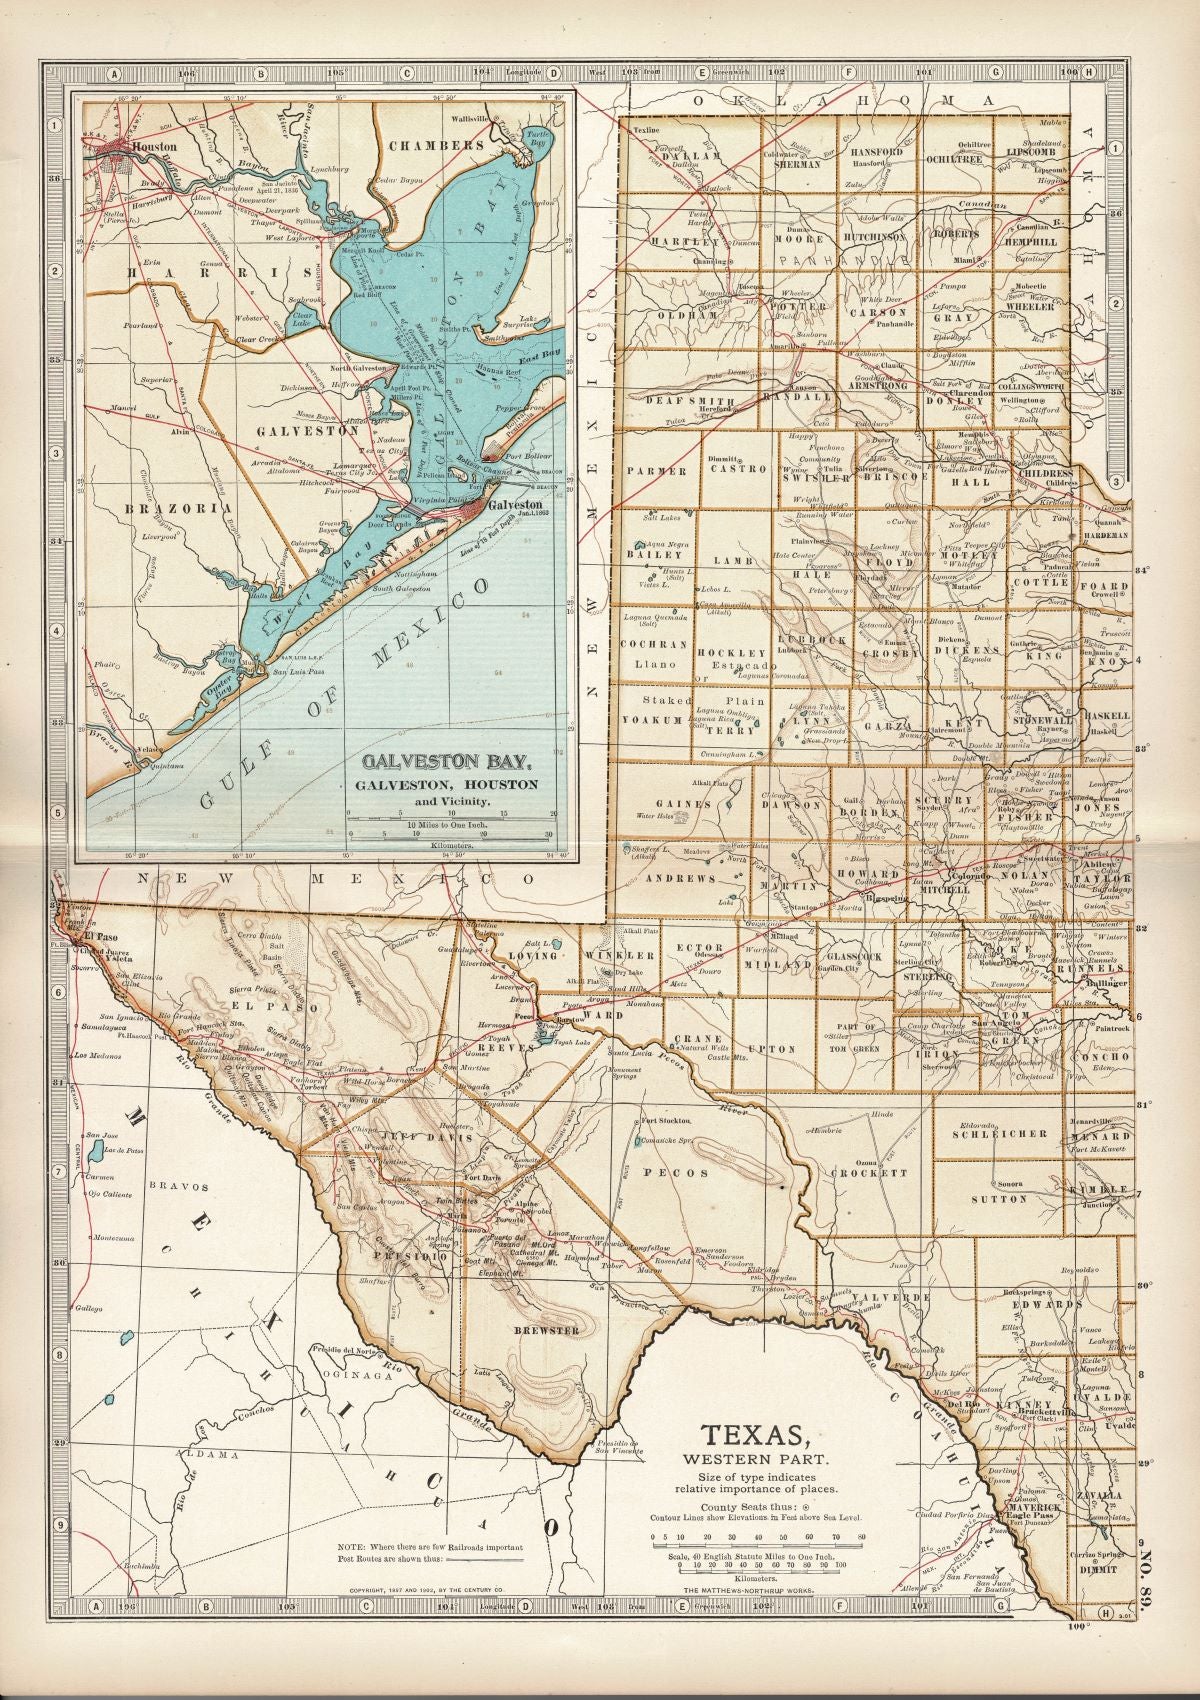 Texas Western Part antique map No.89 Encyclopaedia Britannica 1903